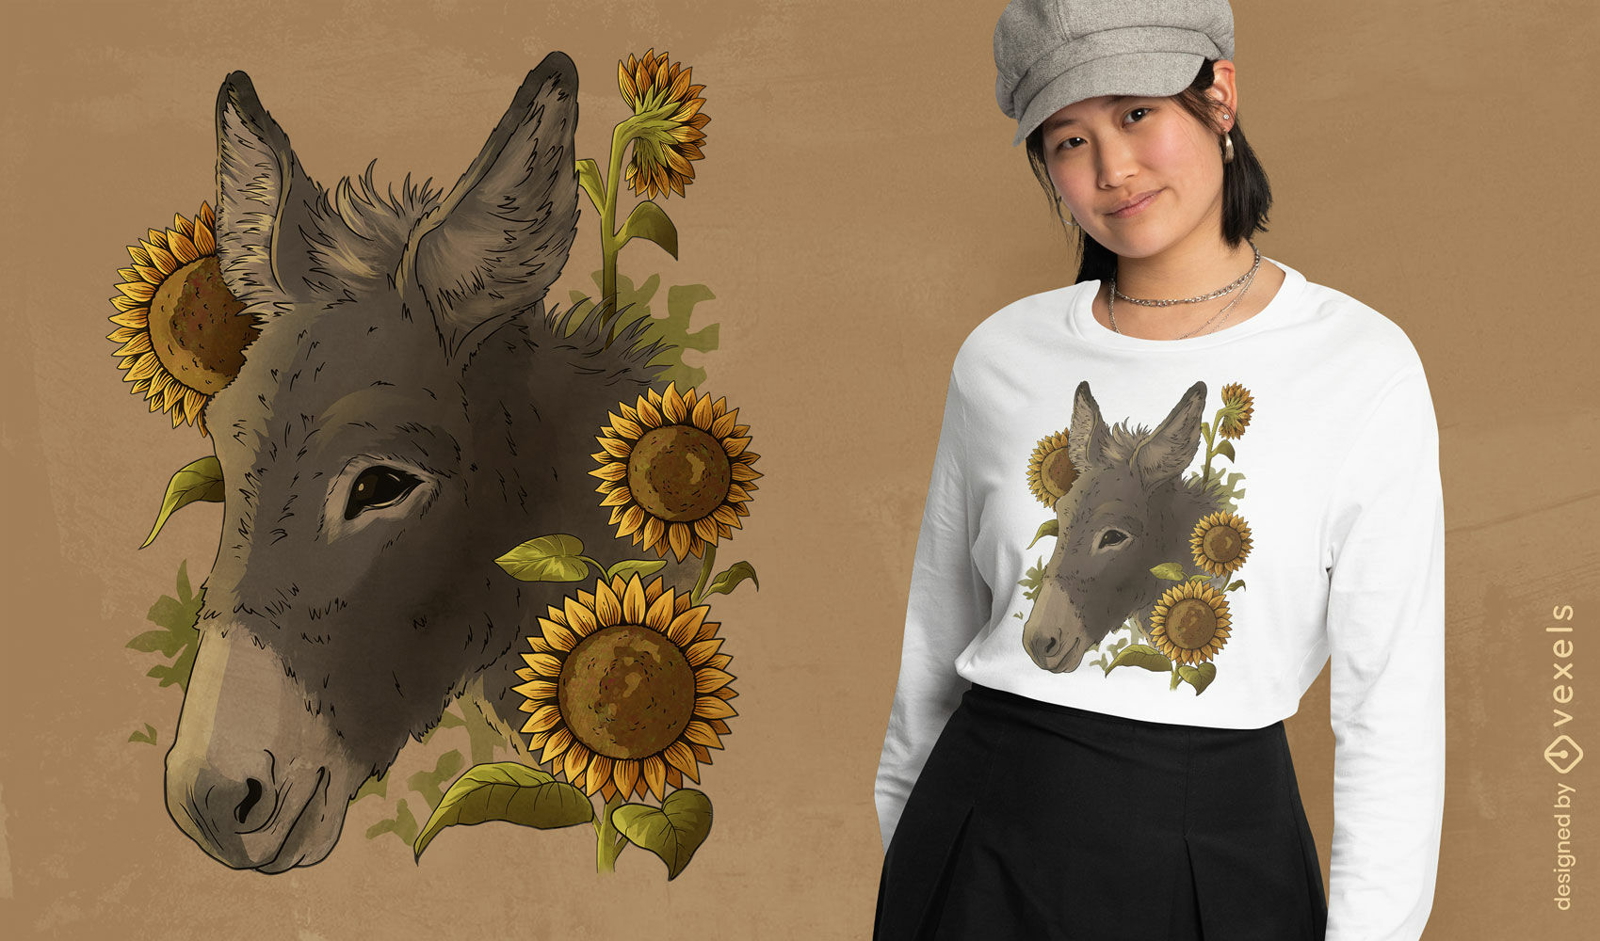 Animal burro com design de camiseta de girass?is